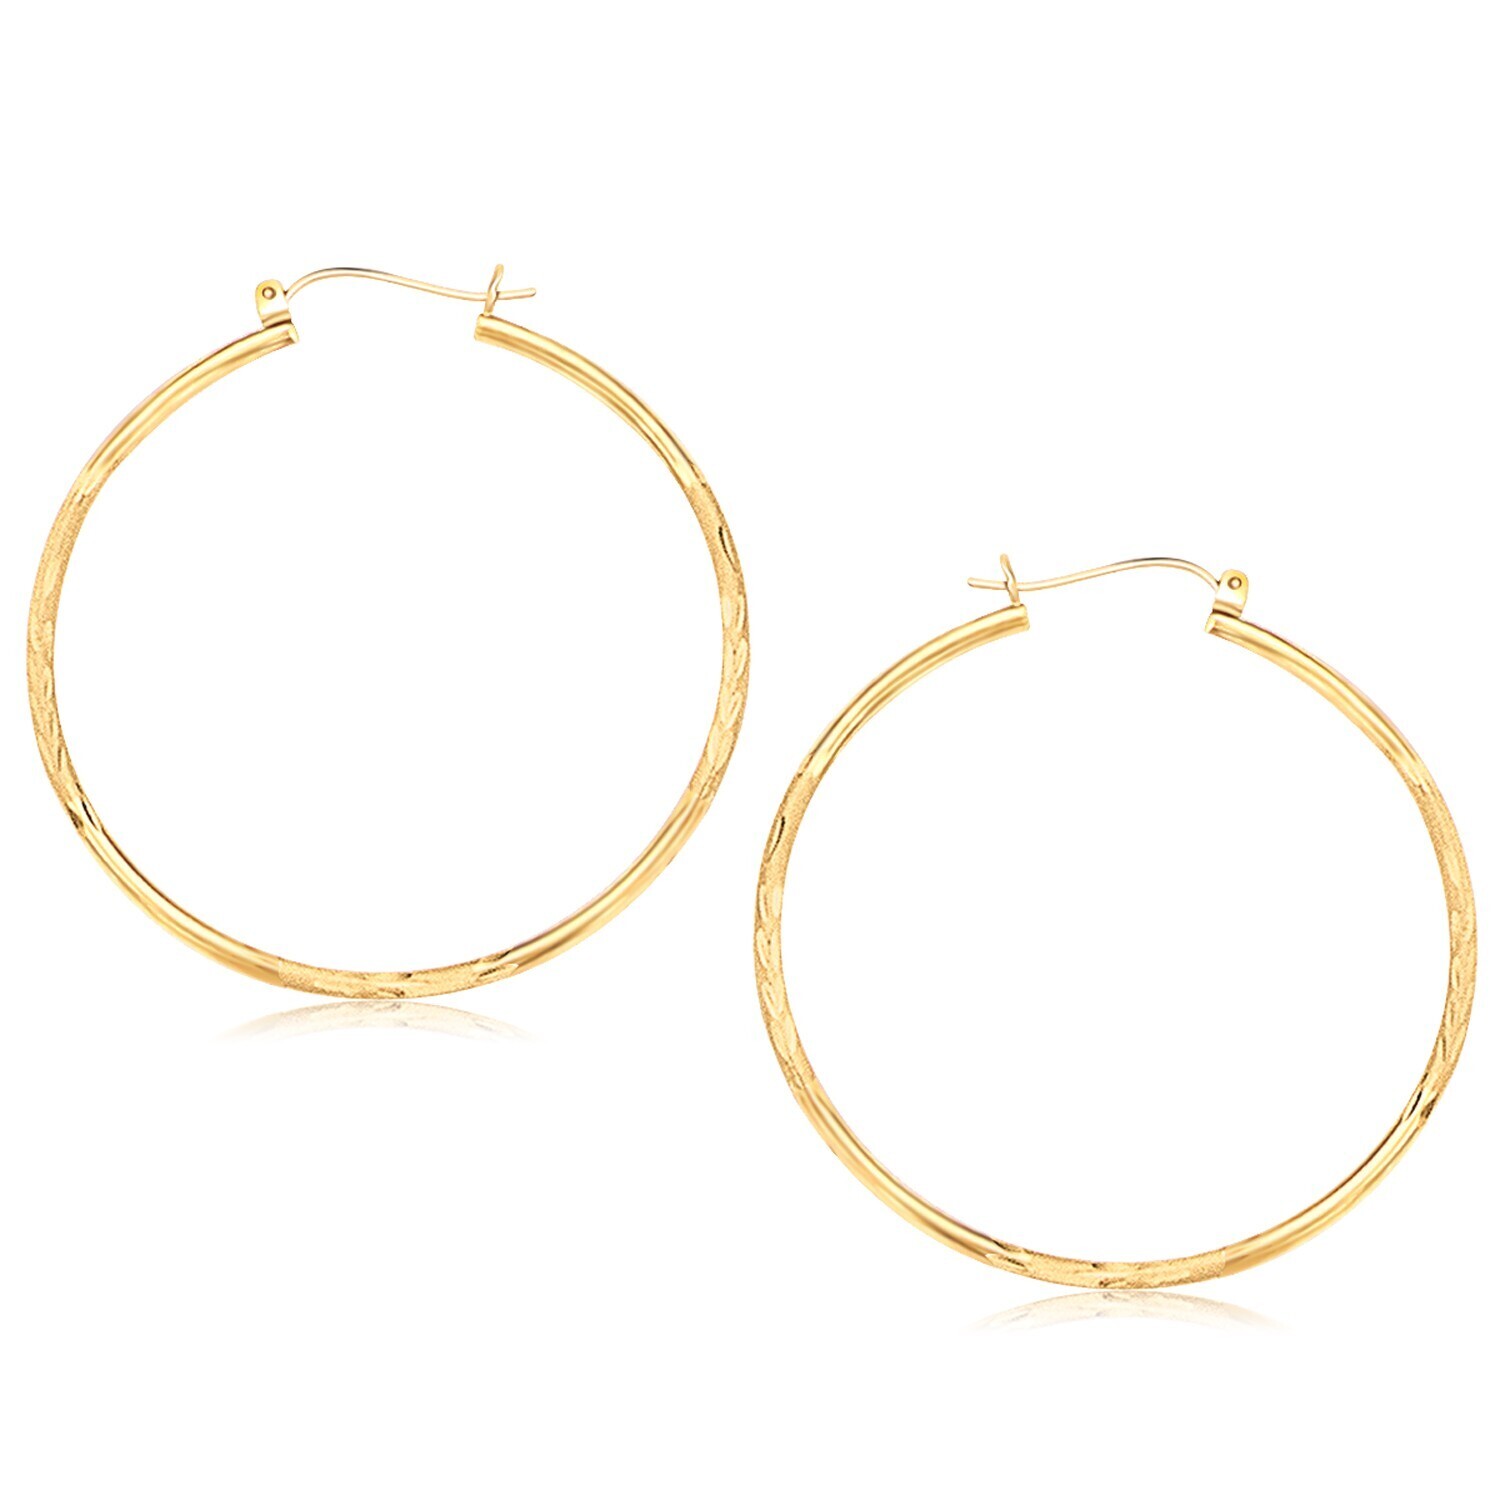 14k Yellow Gold Fancy Diamond Cut Extra Large Hoop Earrings (45mm Diameter)